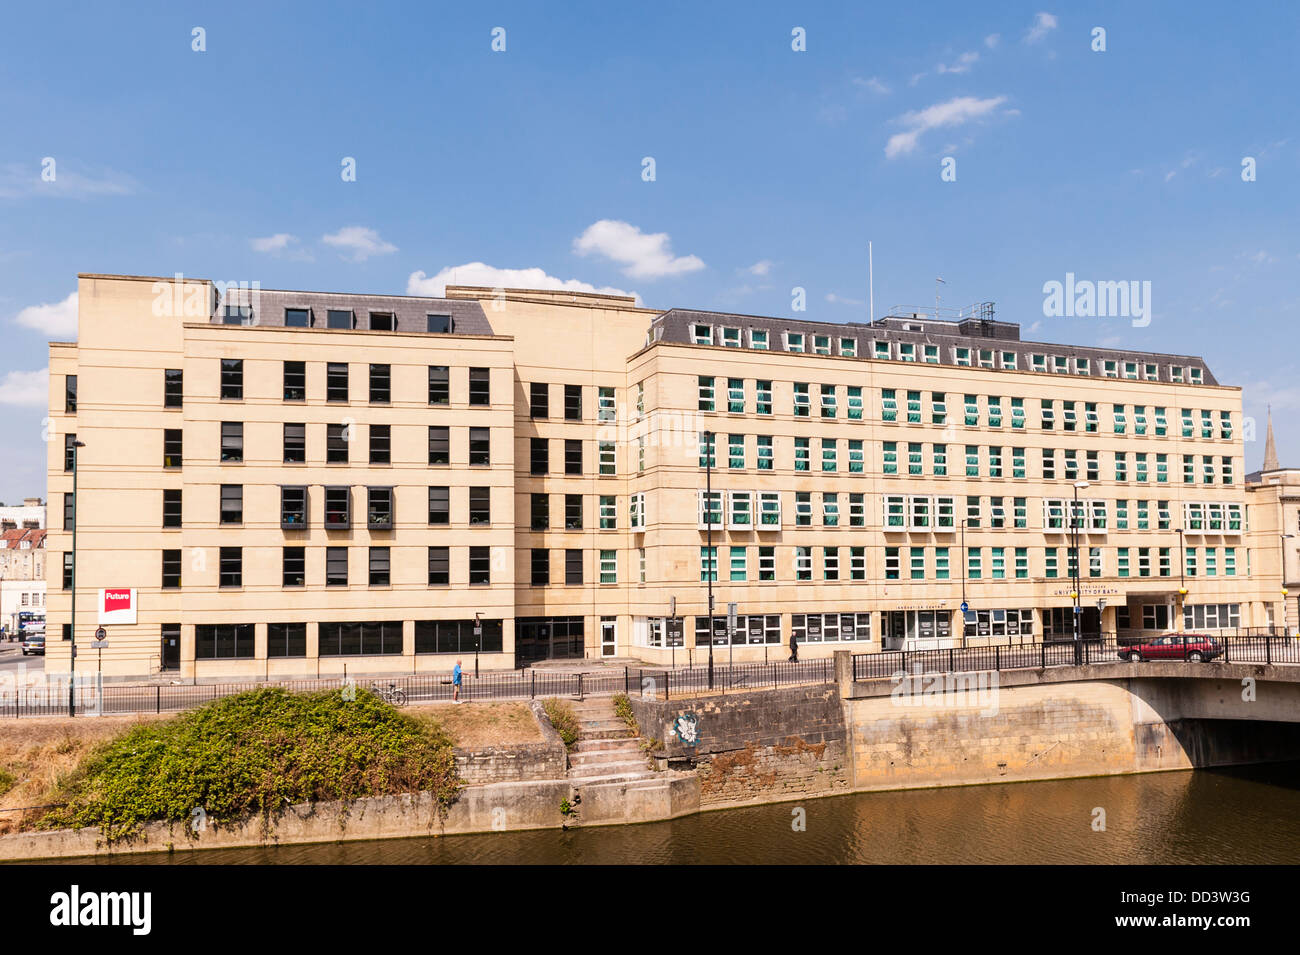 Der University of Bath, Bath, Somerset, England, Großbritannien, Großbritannien Stockfoto